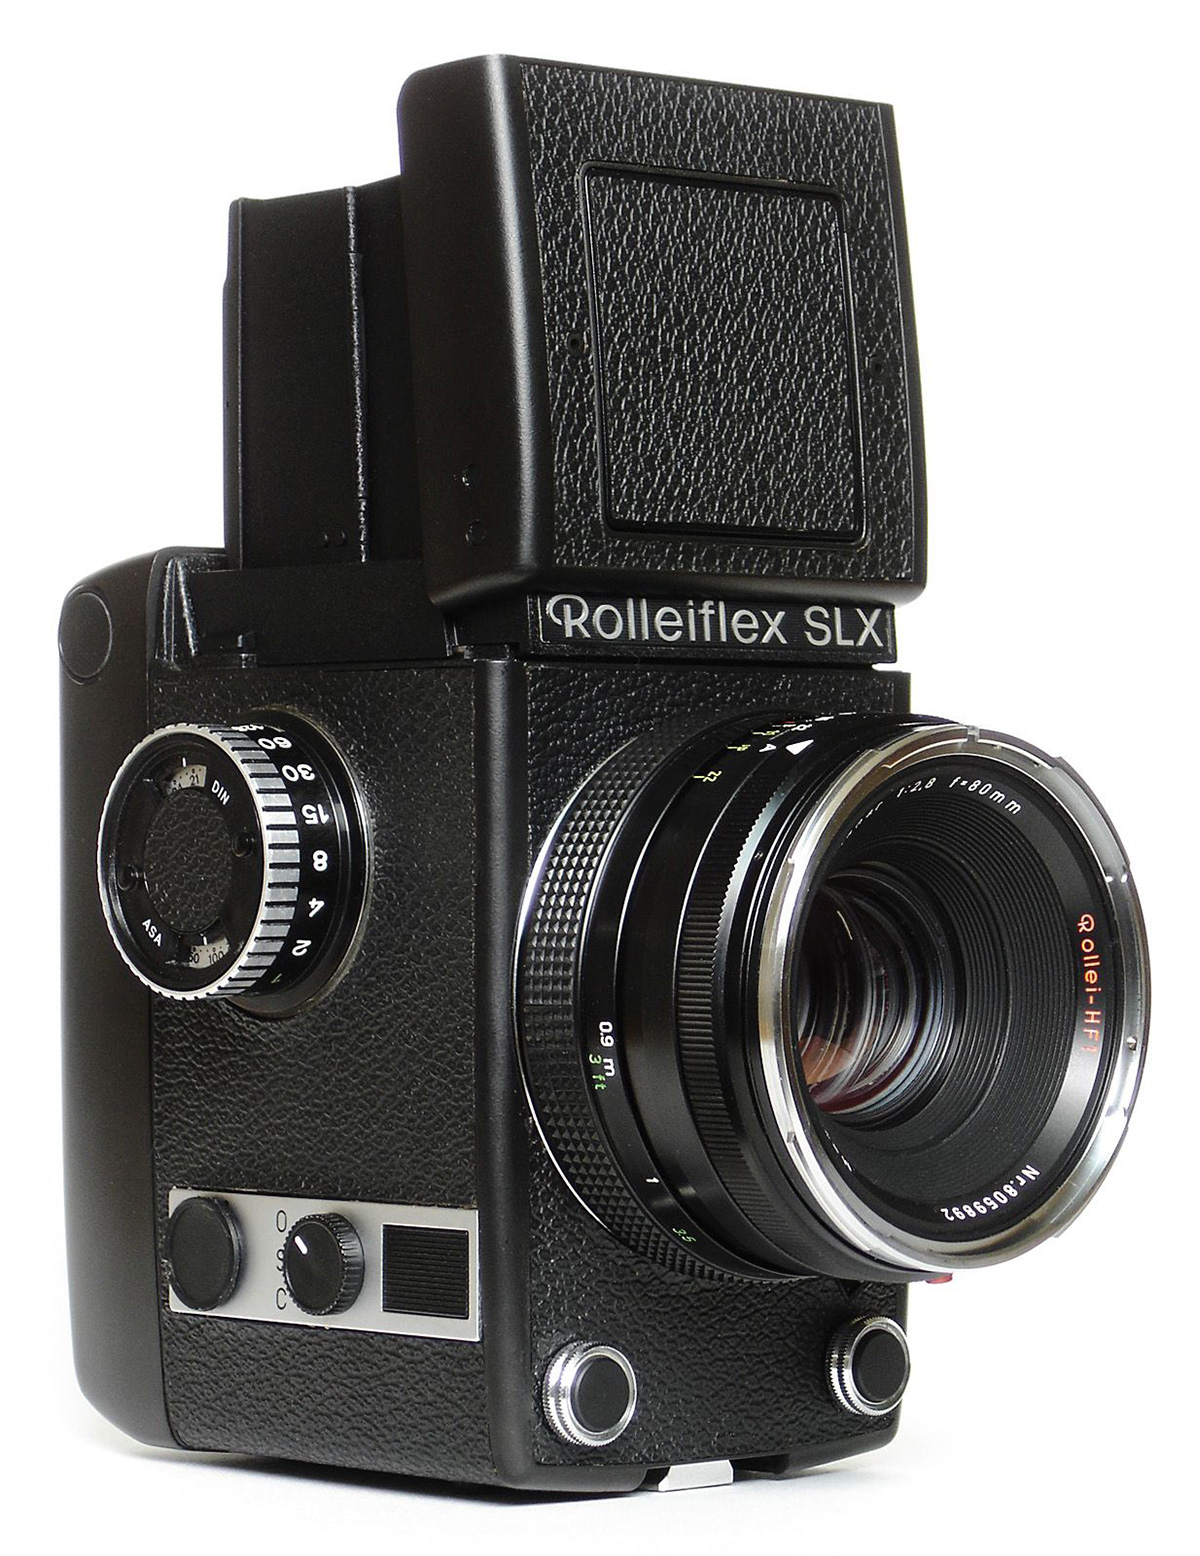 Die erste vollautomatische Kamera der Firma Rollei 1973 Rolleiflex SLX